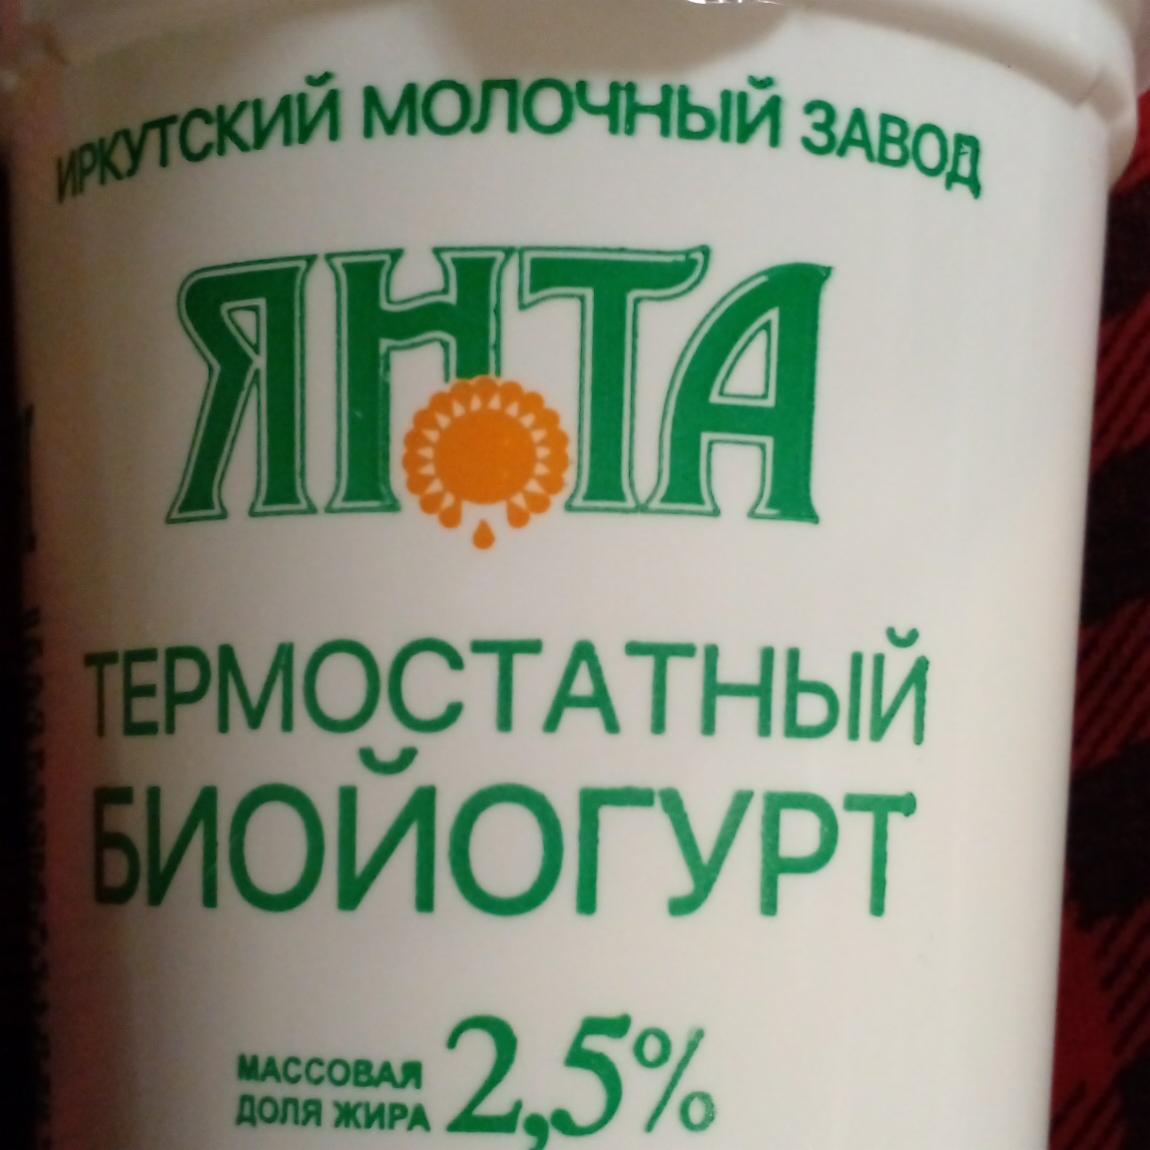 Фото - йогурт термостатный 2,5% ЯНТА